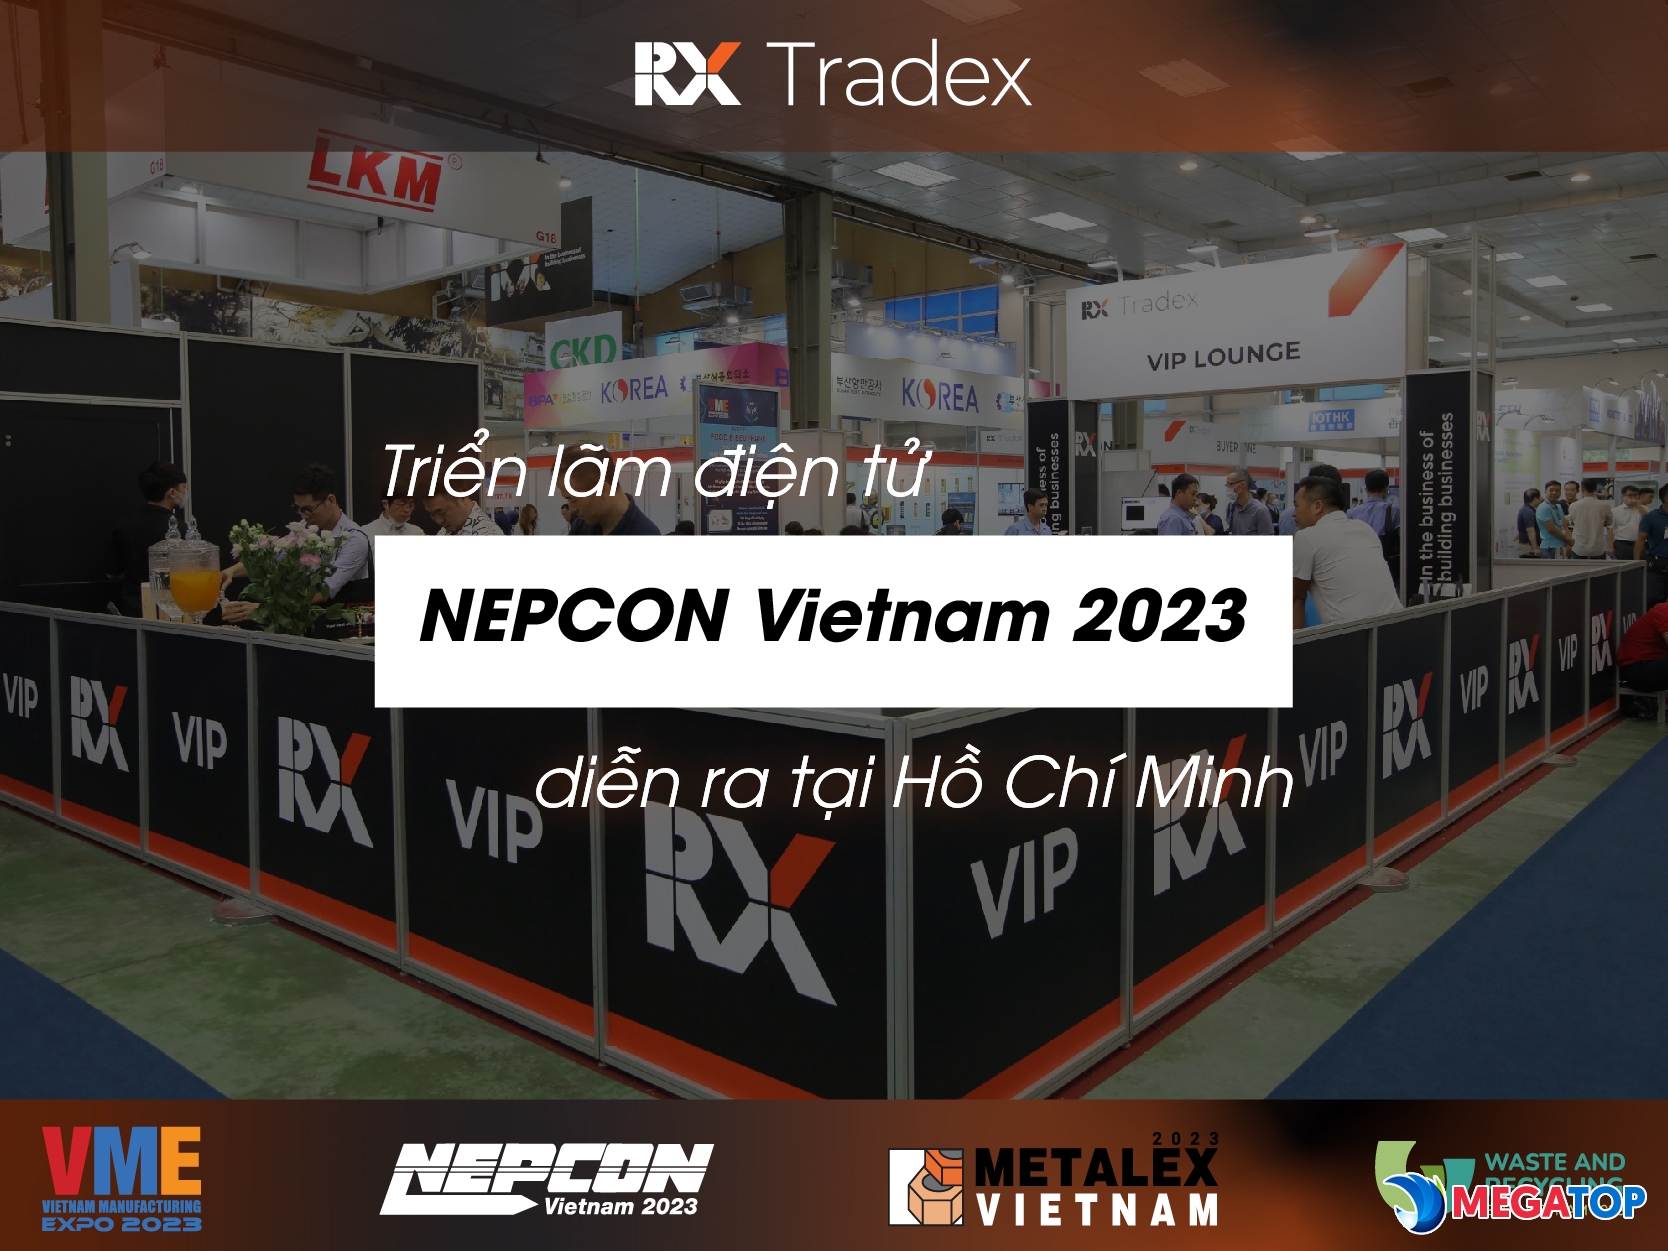 Triển lãm điện tử NEPCON Vietnam 2023 diễn ra tại Hồ Chí Minh